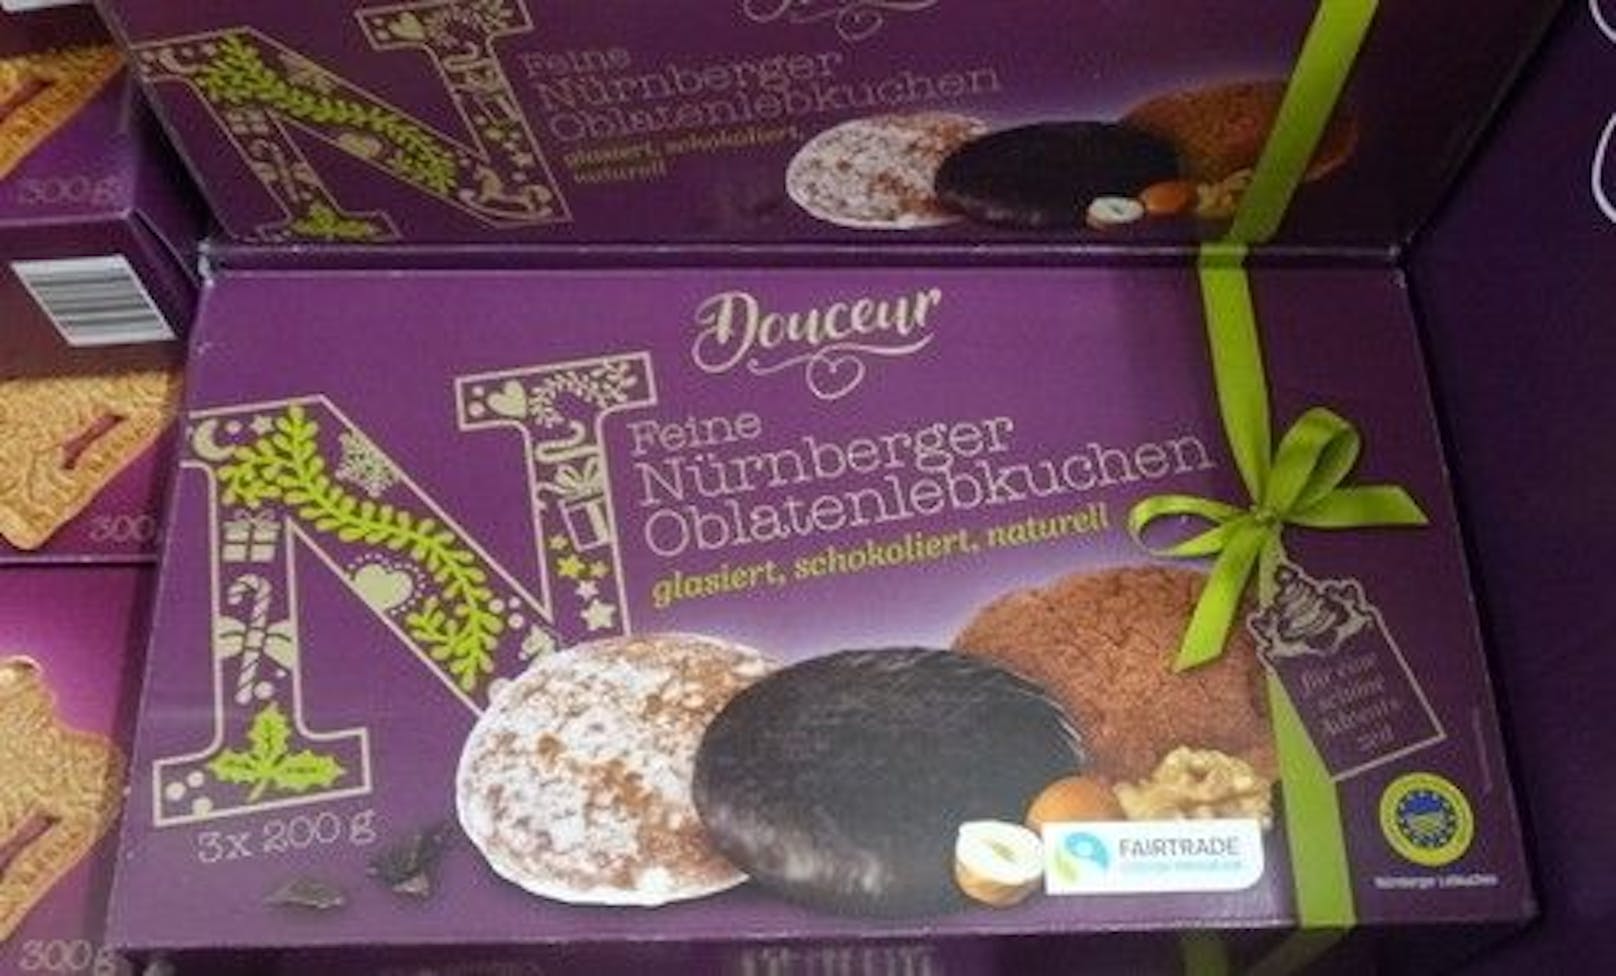 Douceur - Feine Nürnberger Oblatenlebkuchen mit Fairtrade Kakao. Erhältlich bei Billa.